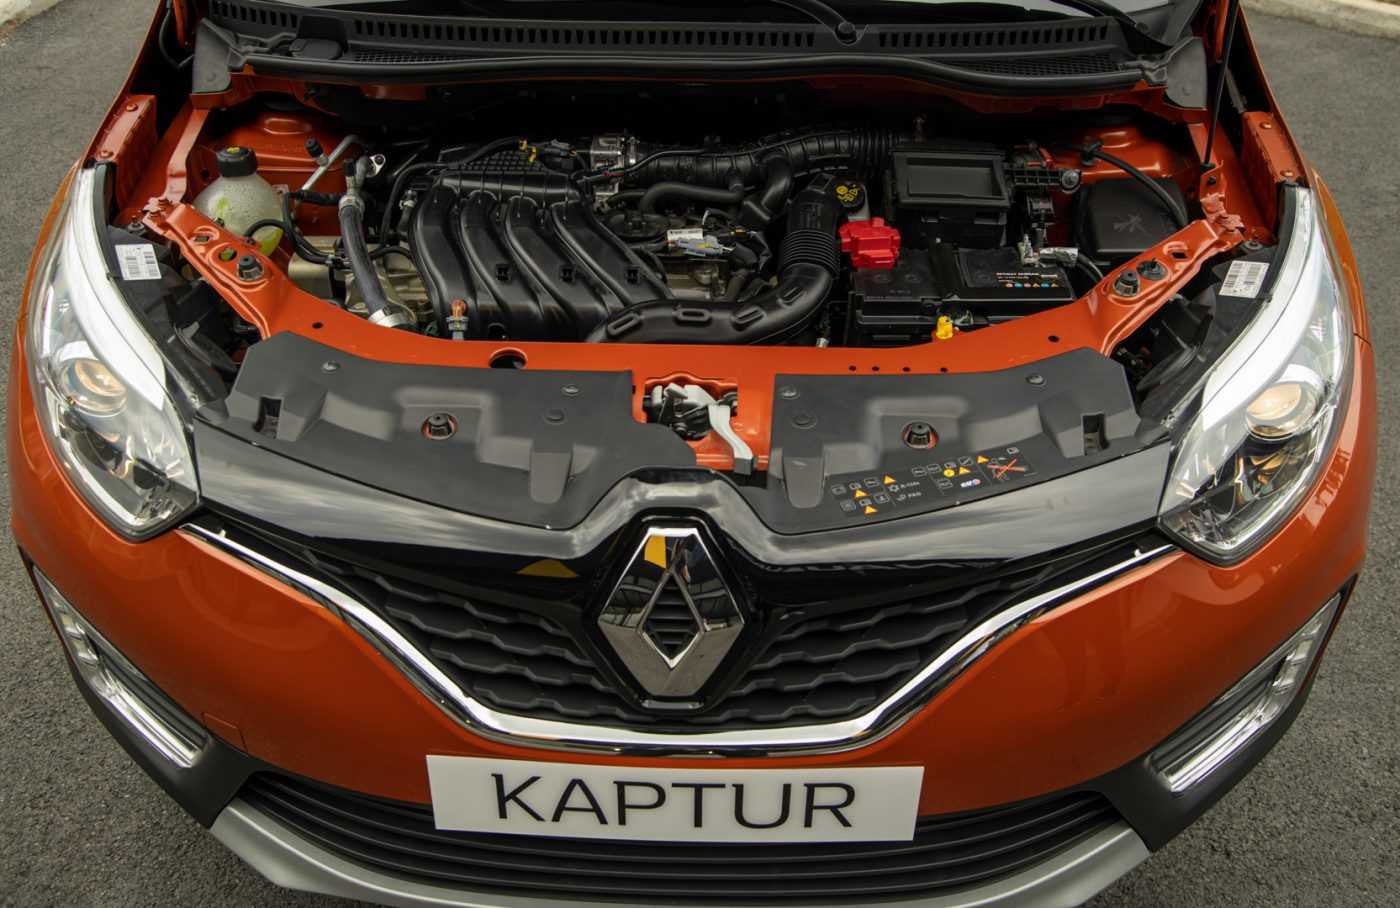 Chi tiết Renault Kaptur tại Việt Nam: Giá 800 triệu, trang bị hụt hơi so với Kia Seltos nhưng kích thước gây chú ý - Ảnh 5.